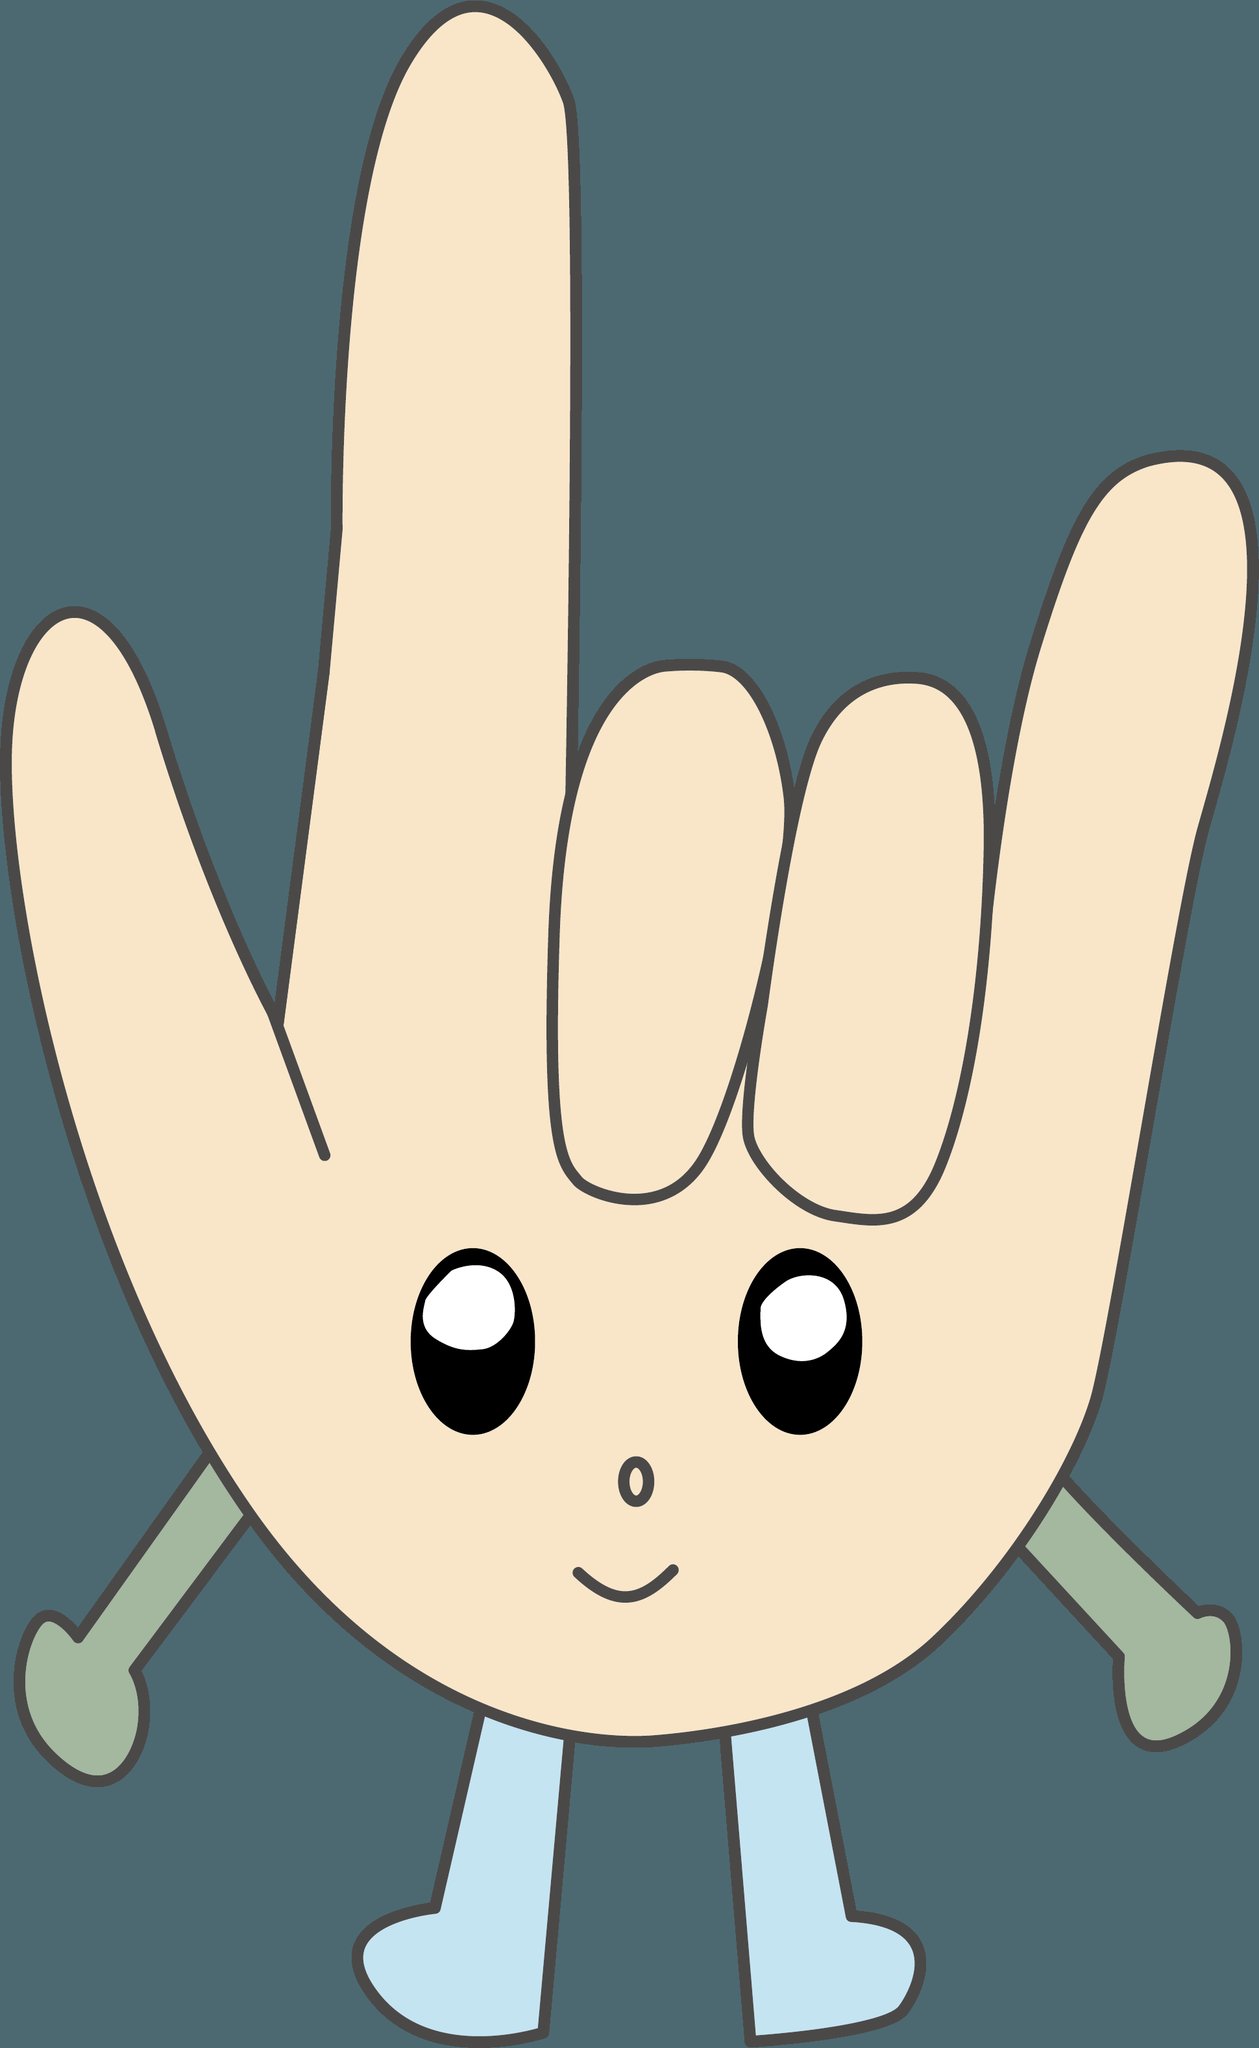 北海道高等聾学校 みなさん 初めまして 北海道高等聾学校 公式twitterキャラクターの ハンド君 です 高等聾学校の生徒が僕をデザインしてくれました 僕の顔は I Love You の手話の形 僕の手は学校から見える山の木をイメージした緑 僕の足は学校